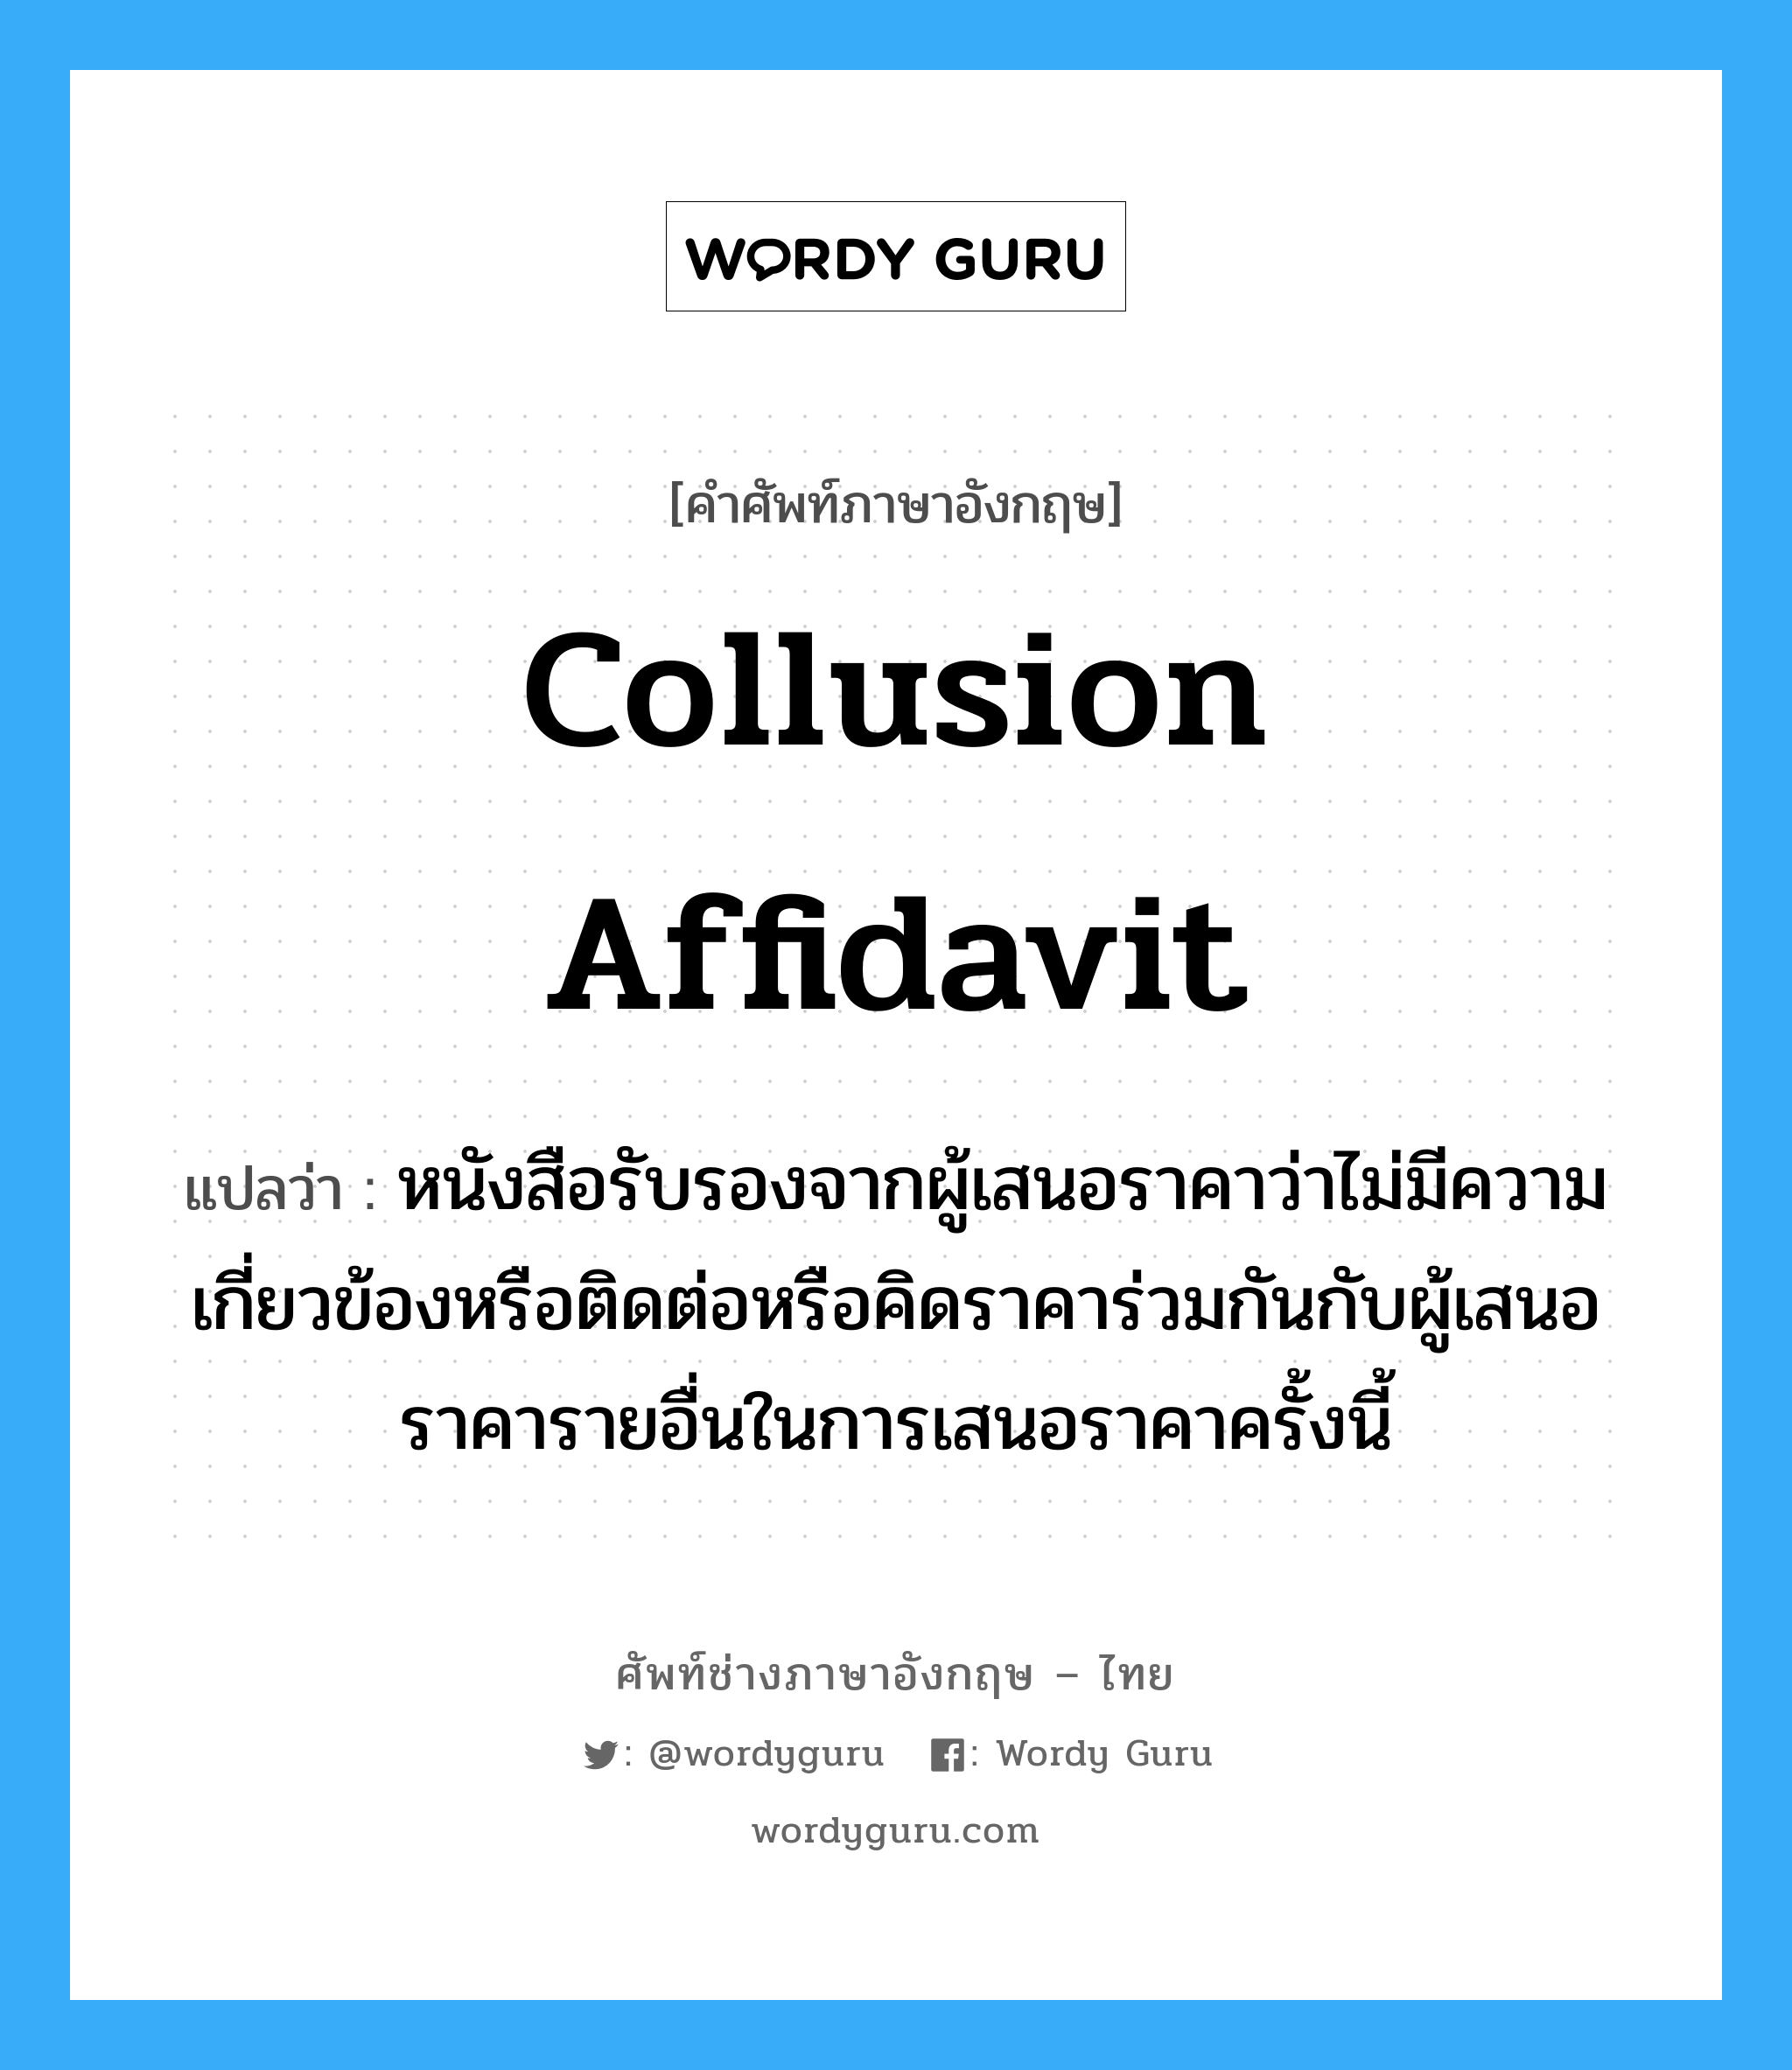 Collusion Affidavit แปลว่า?, คำศัพท์ช่างภาษาอังกฤษ - ไทย Collusion Affidavit คำศัพท์ภาษาอังกฤษ Collusion Affidavit แปลว่า หนังสือรับรองจากผู้เสนอราคาว่าไม่มีความเกี่ยวข้องหรือติดต่อหรือคิดราคาร่วมกันกับผู้เสนอราคารายอื่นในการเสนอราคาครั้งนี้